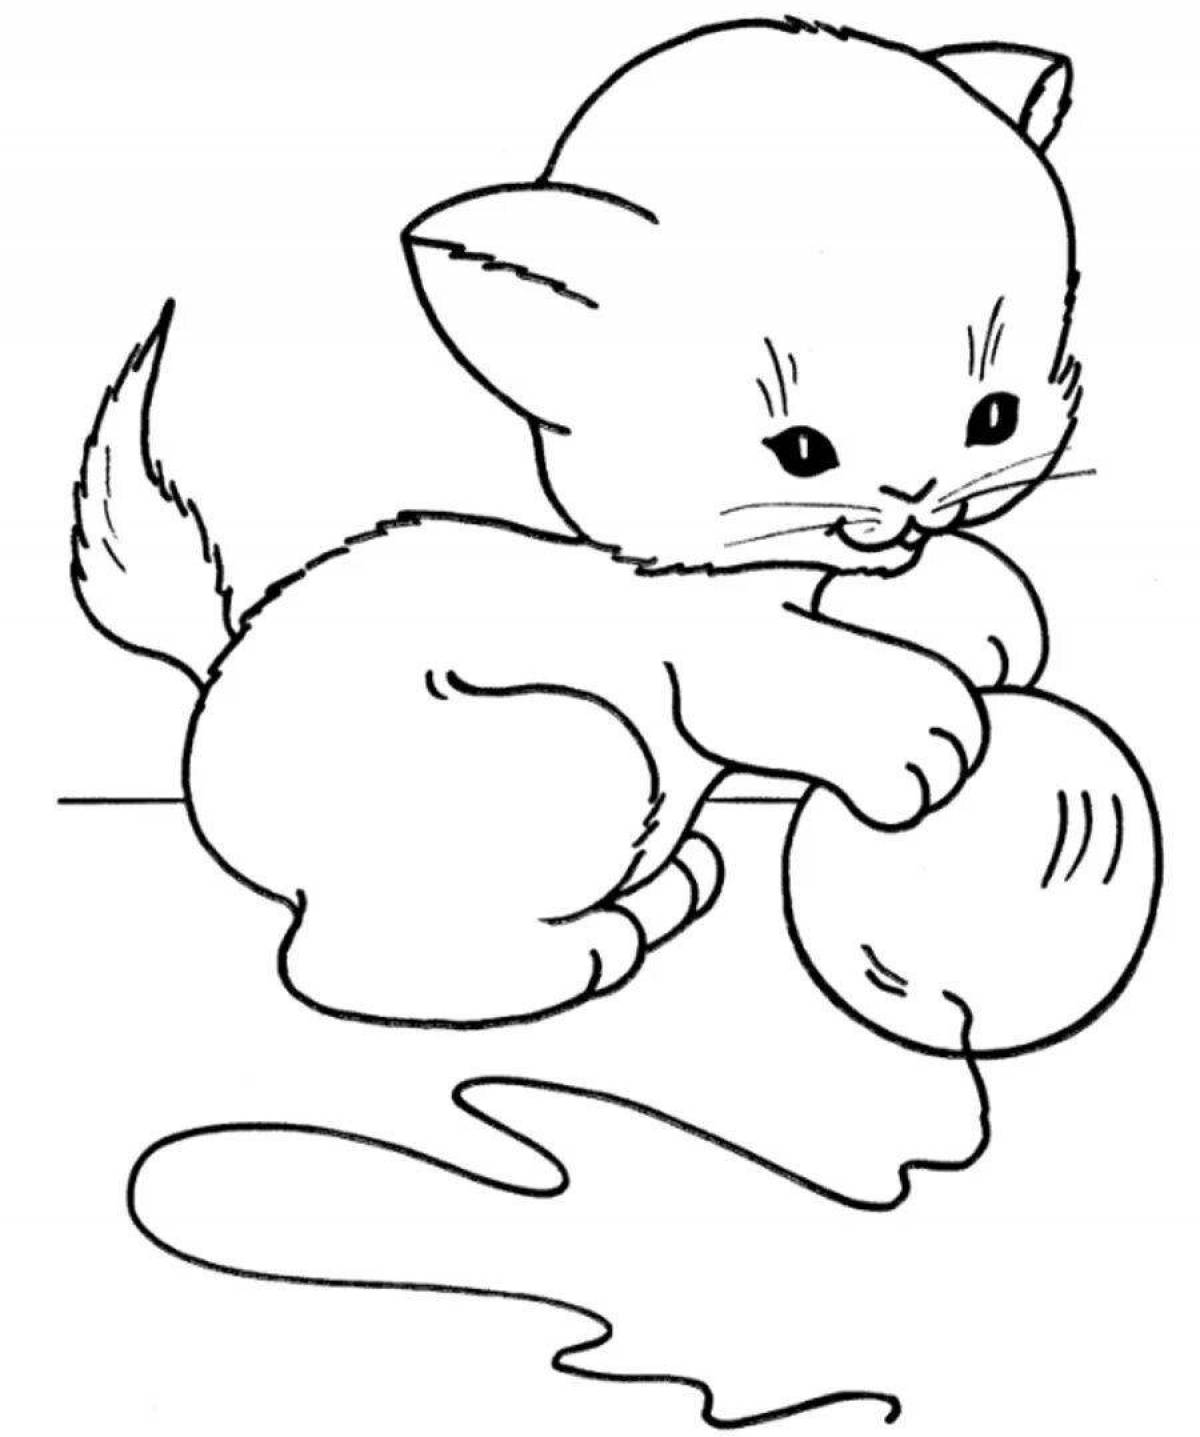 Увлекательная раскраска кошка для детей 2-3 лет